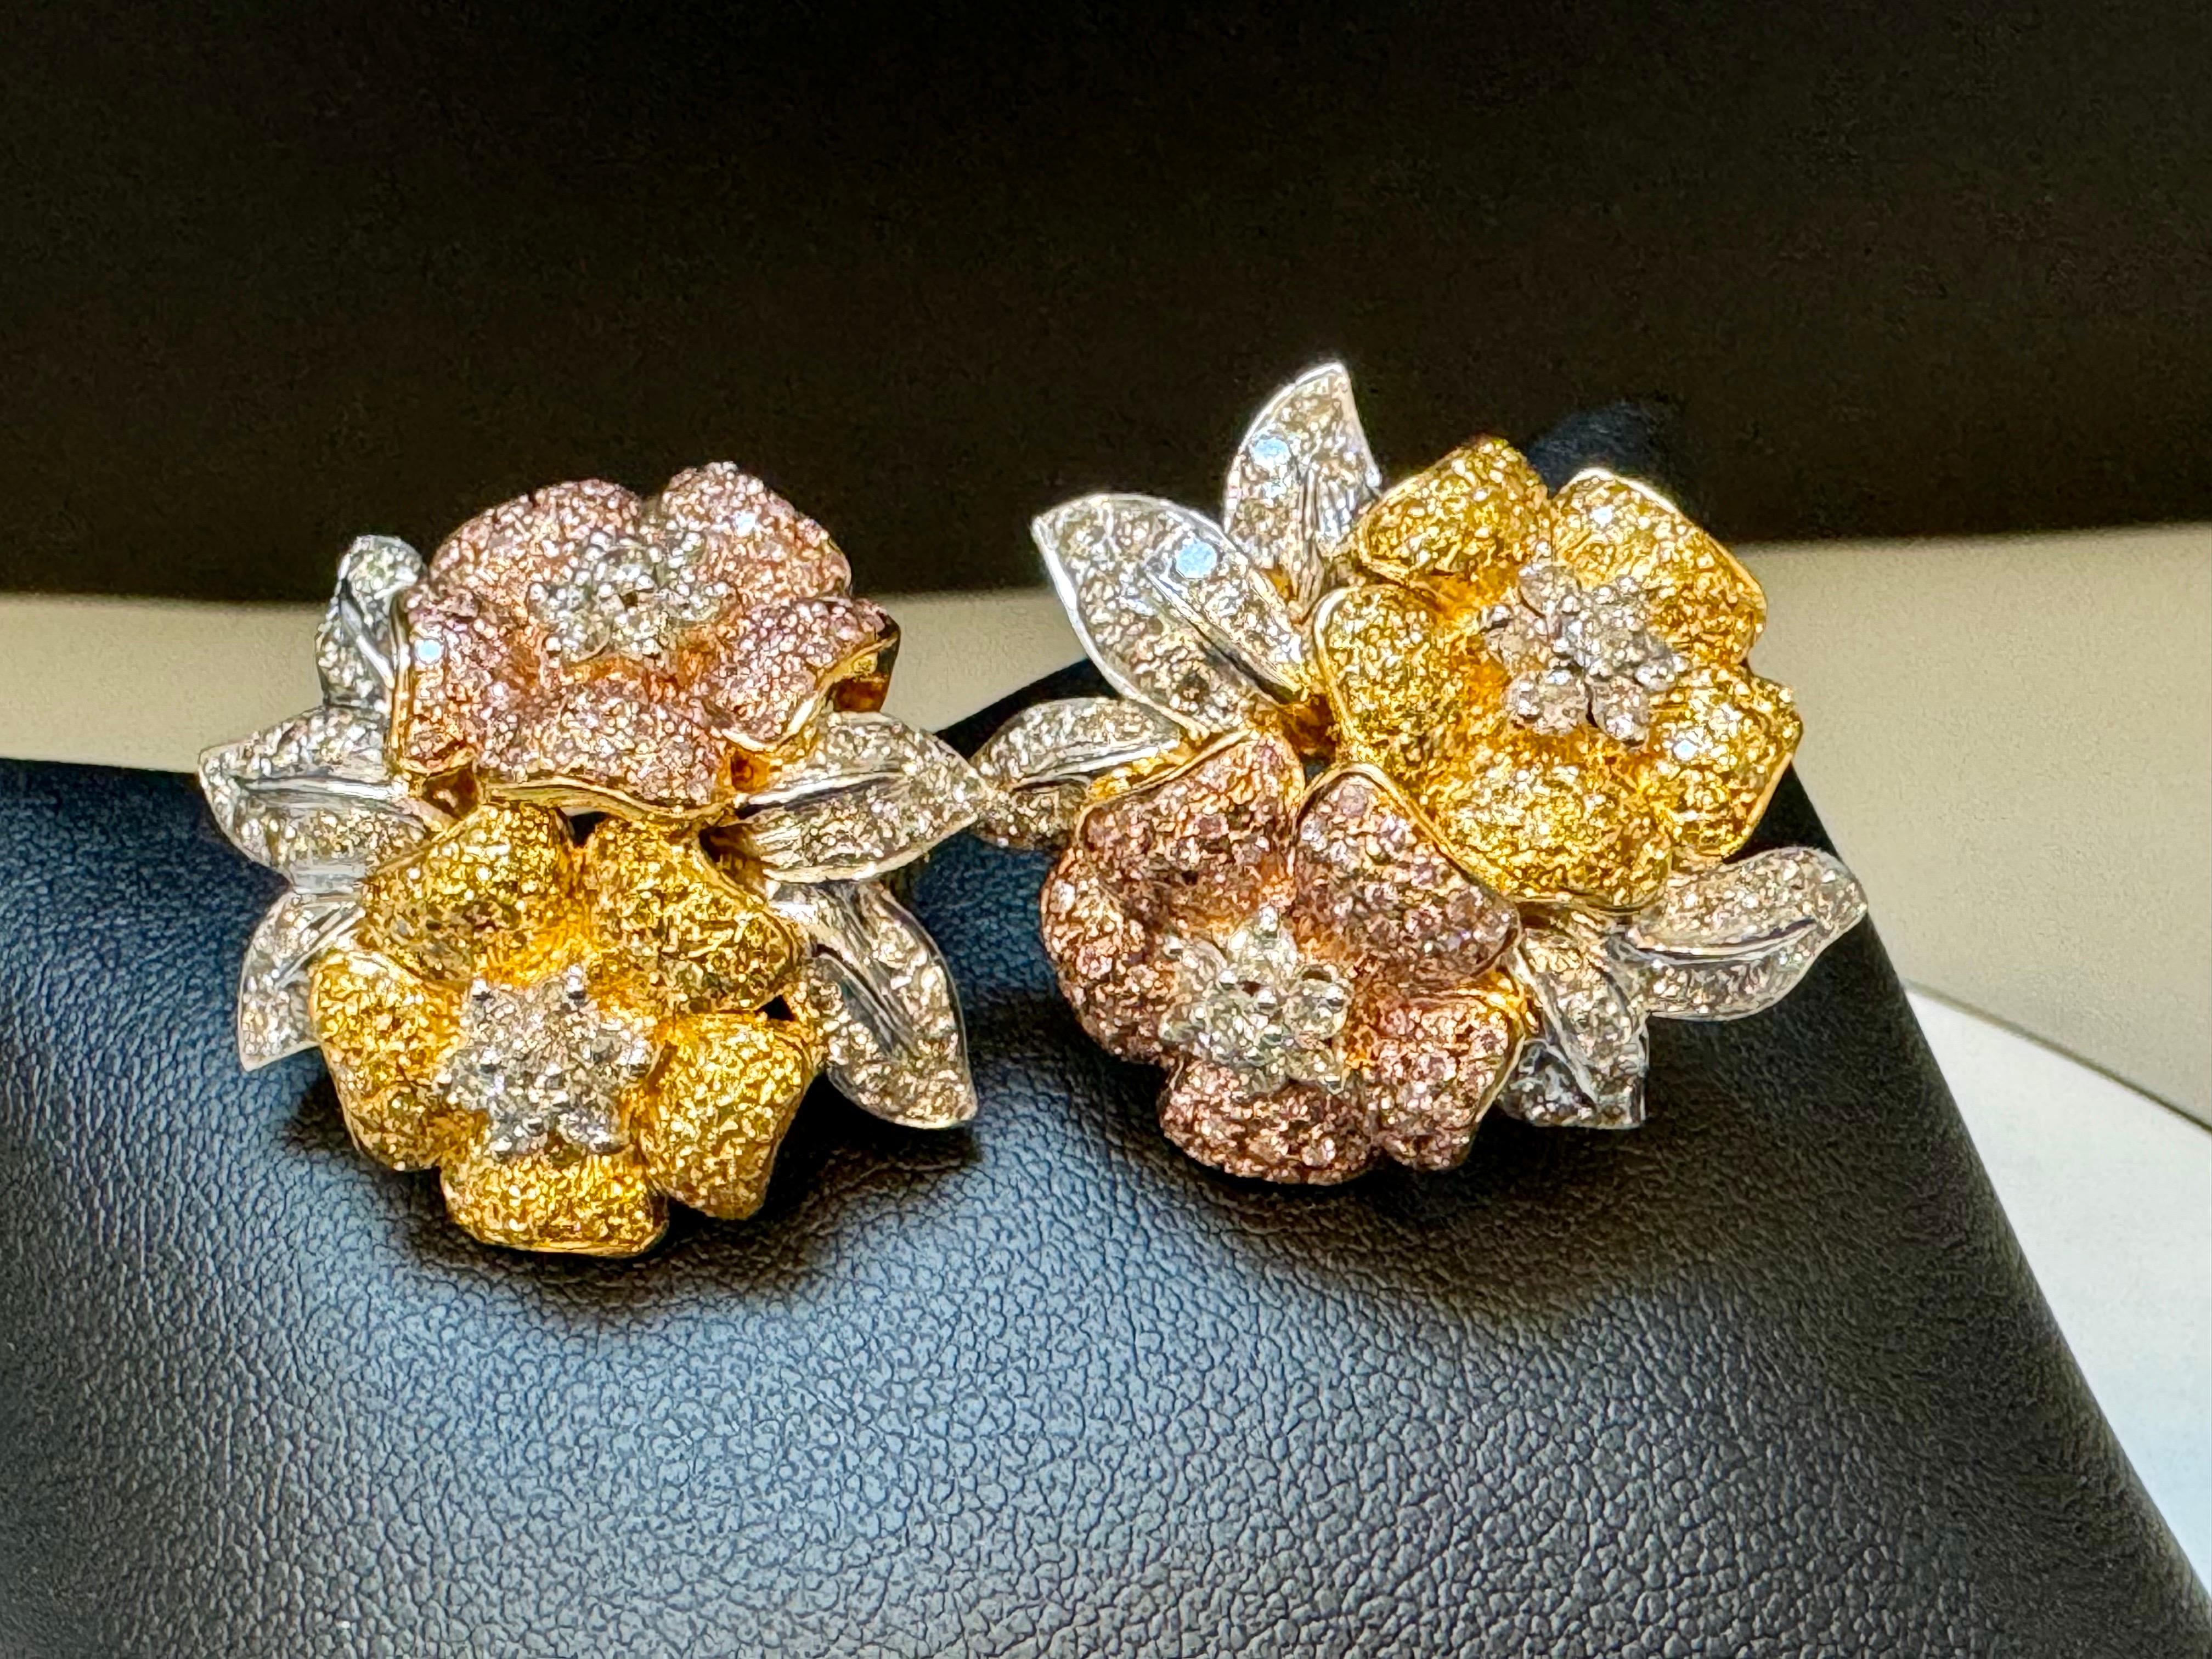 4.4 Karat natürliche Fancy Color Diamant-Blumen-Ohrringe aus 18 Kt mehrfarbigem Gold 
Ungefähr 4,4 Ct Natürlich  Fancy Diamanten machen schöne Blütenblätter der Blume, die eine  Diamant  Blume in der Mitte.
Es hat alle Farben von Gold, Gelb, Weiß